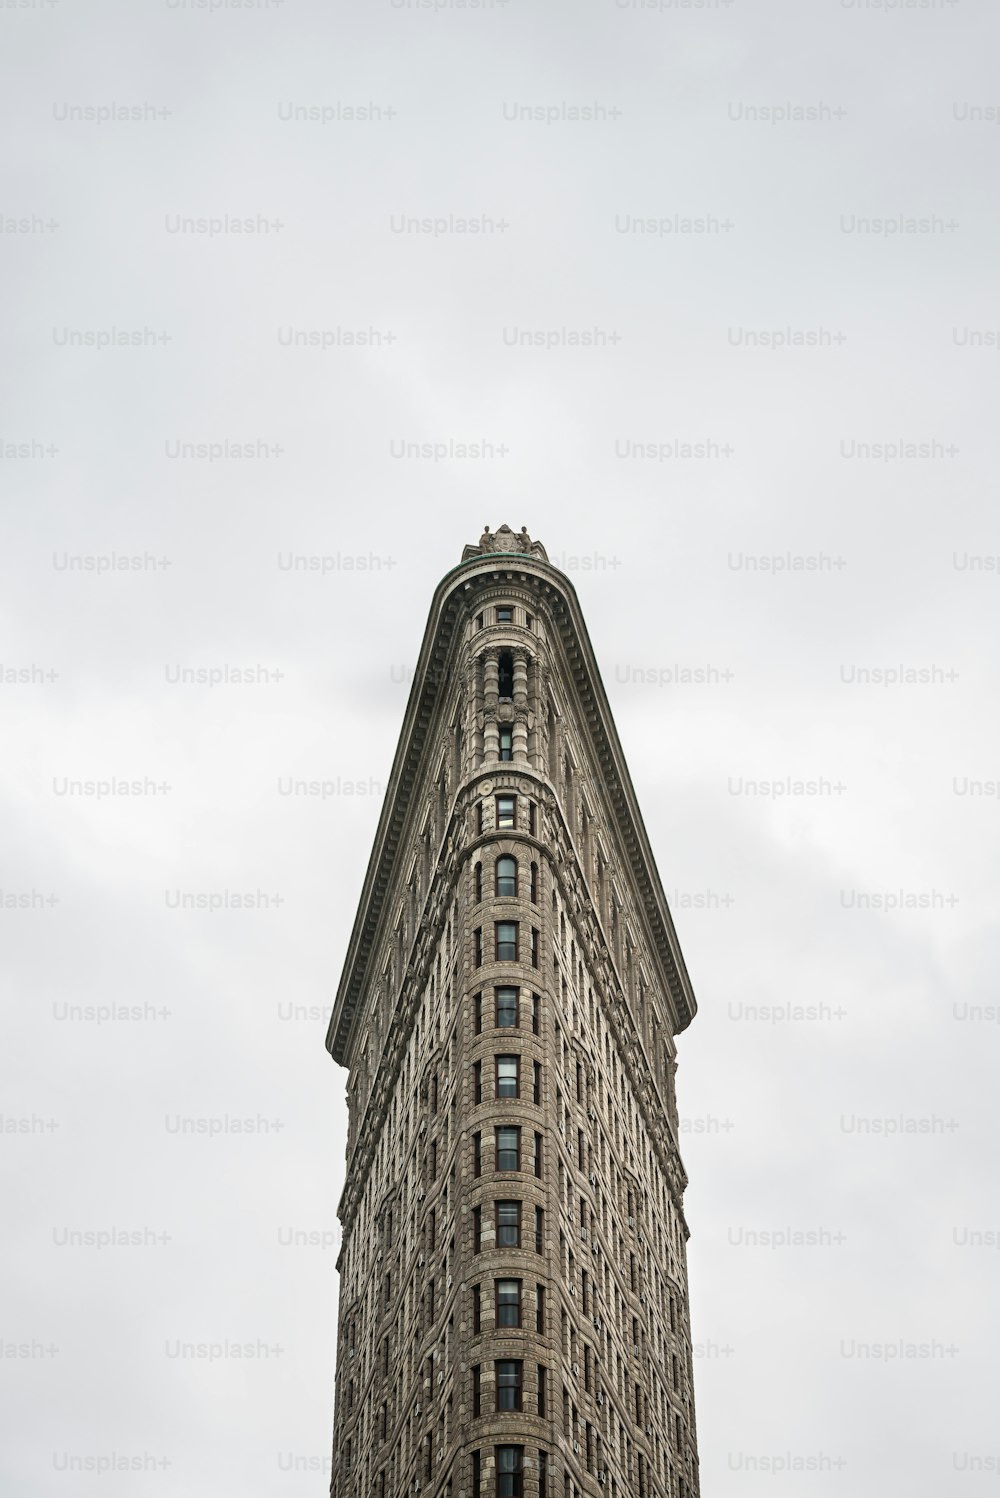 Vista frontal del edificio Flatiron en Nueva York. Originalmente conocido como el Edificio Fuller, se completó en 1902 bajo el diseño de Daniel Burnham de Chicago y en ese momento se convirtió en uno de los edificios más altos de la ciudad y uno de los dos únicos rascacielos al norte de la calle 14.